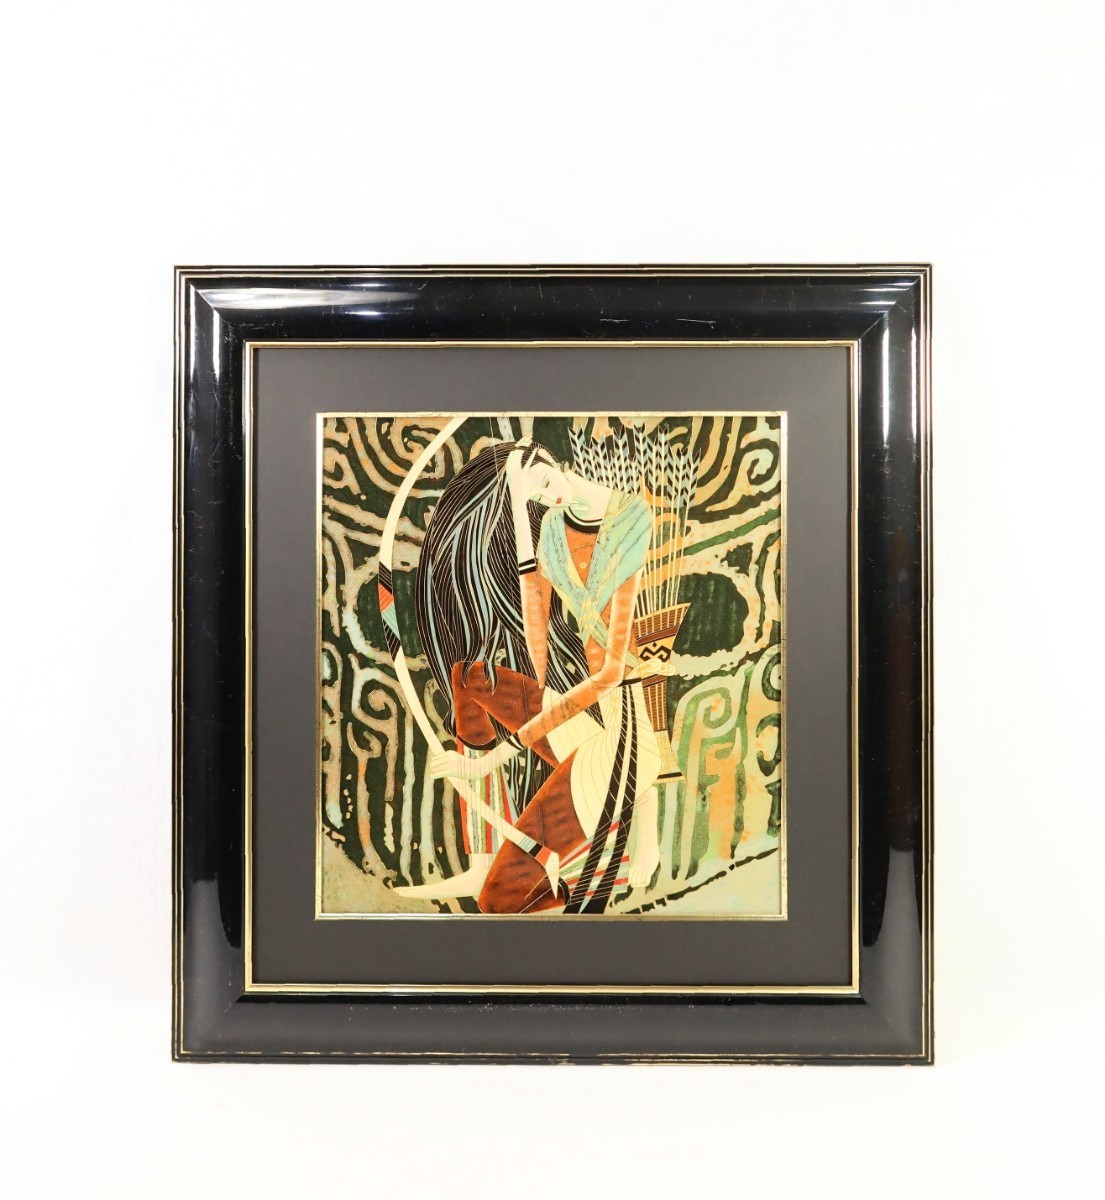 ティン・シャオカン 複製「アイズ・オブ・プレイ」画寸38.5×41.5cm 丁紹光 天と地と人の和合 華麗な色彩と流麗な線描 東洋的な神秘性 8254_画像1